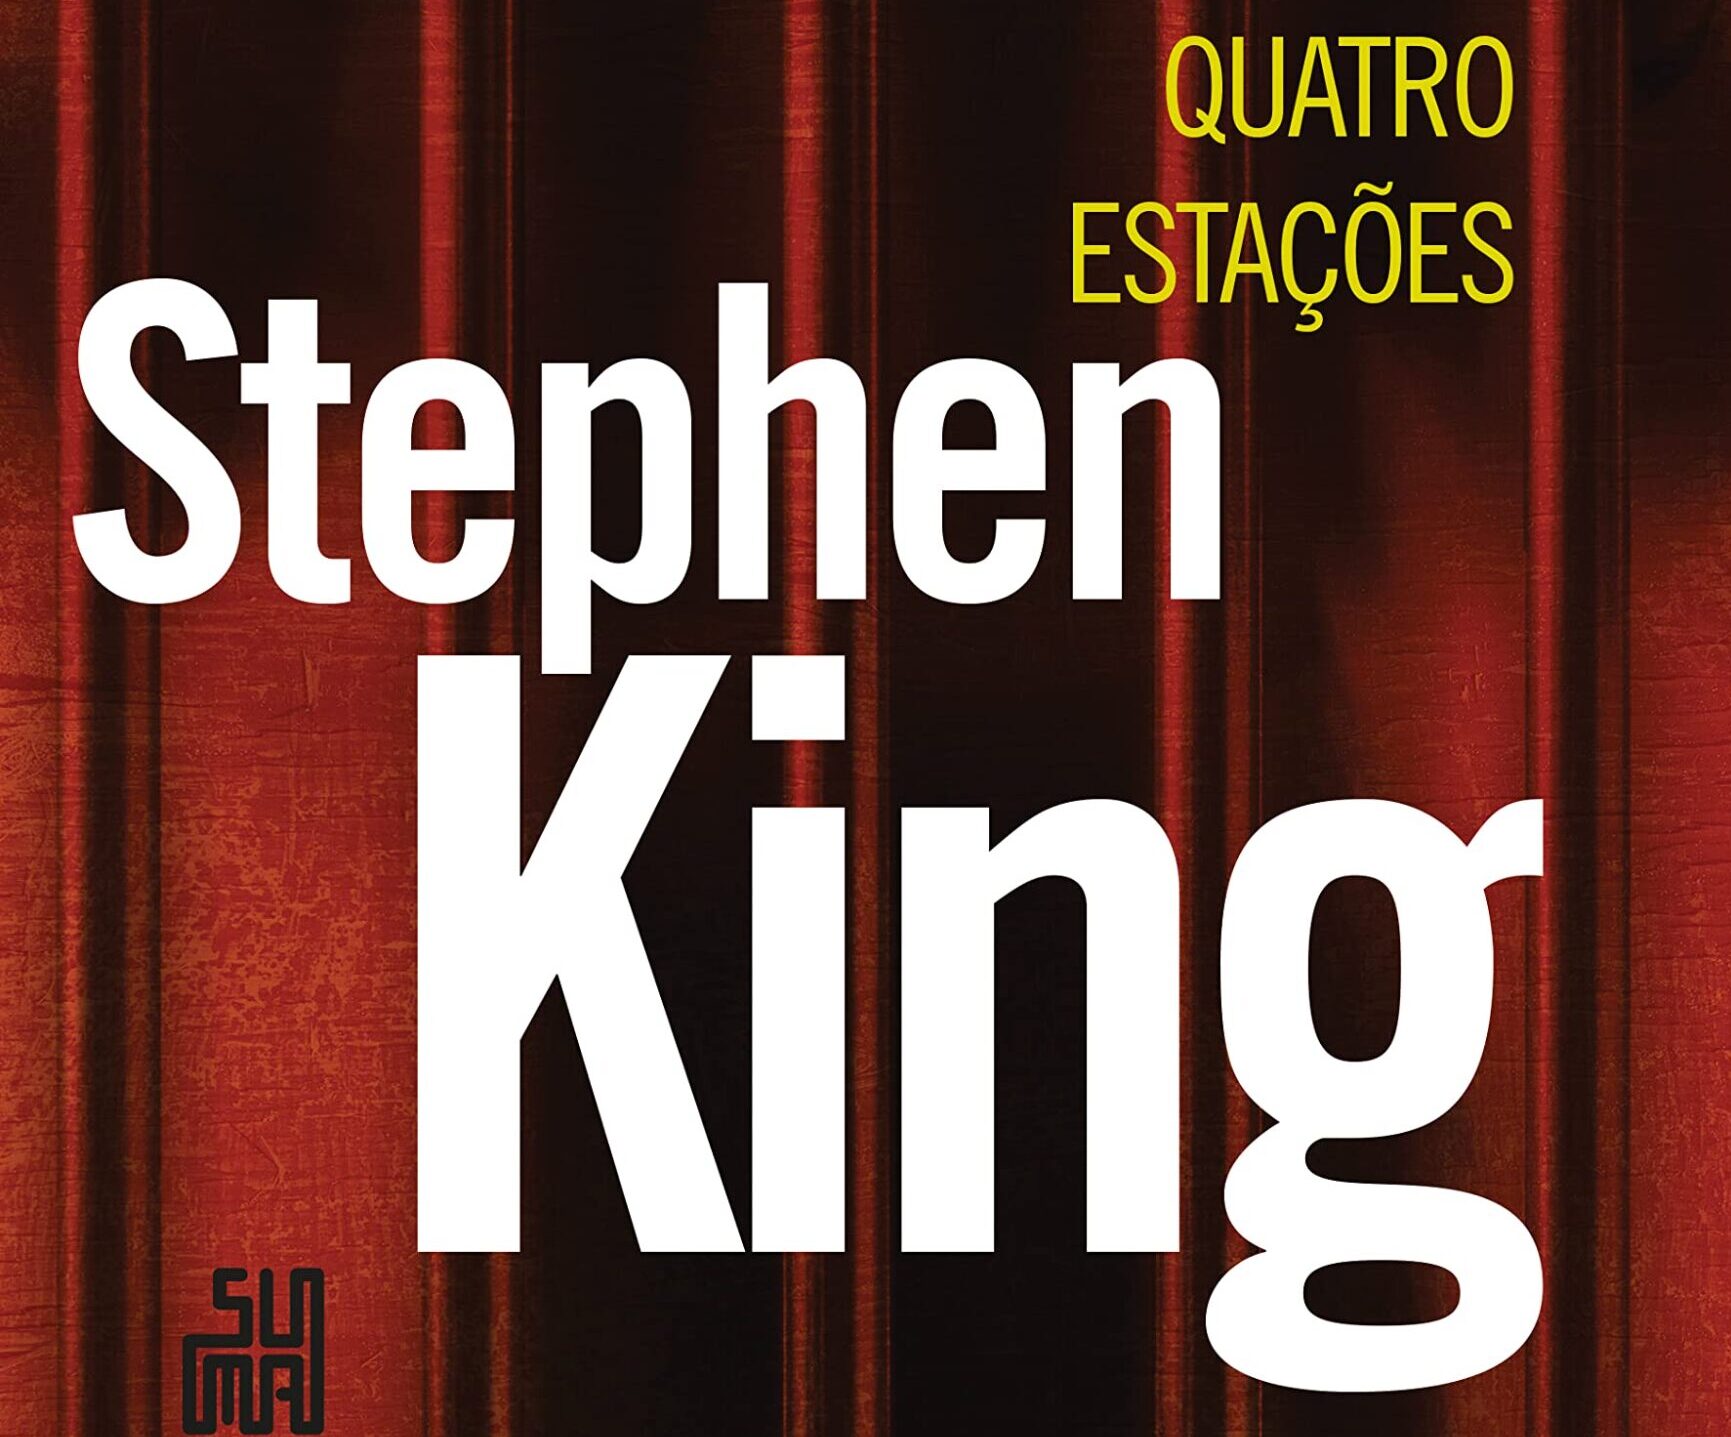 Quatro Estações: Resenha do livro de contos de Stephen King 17